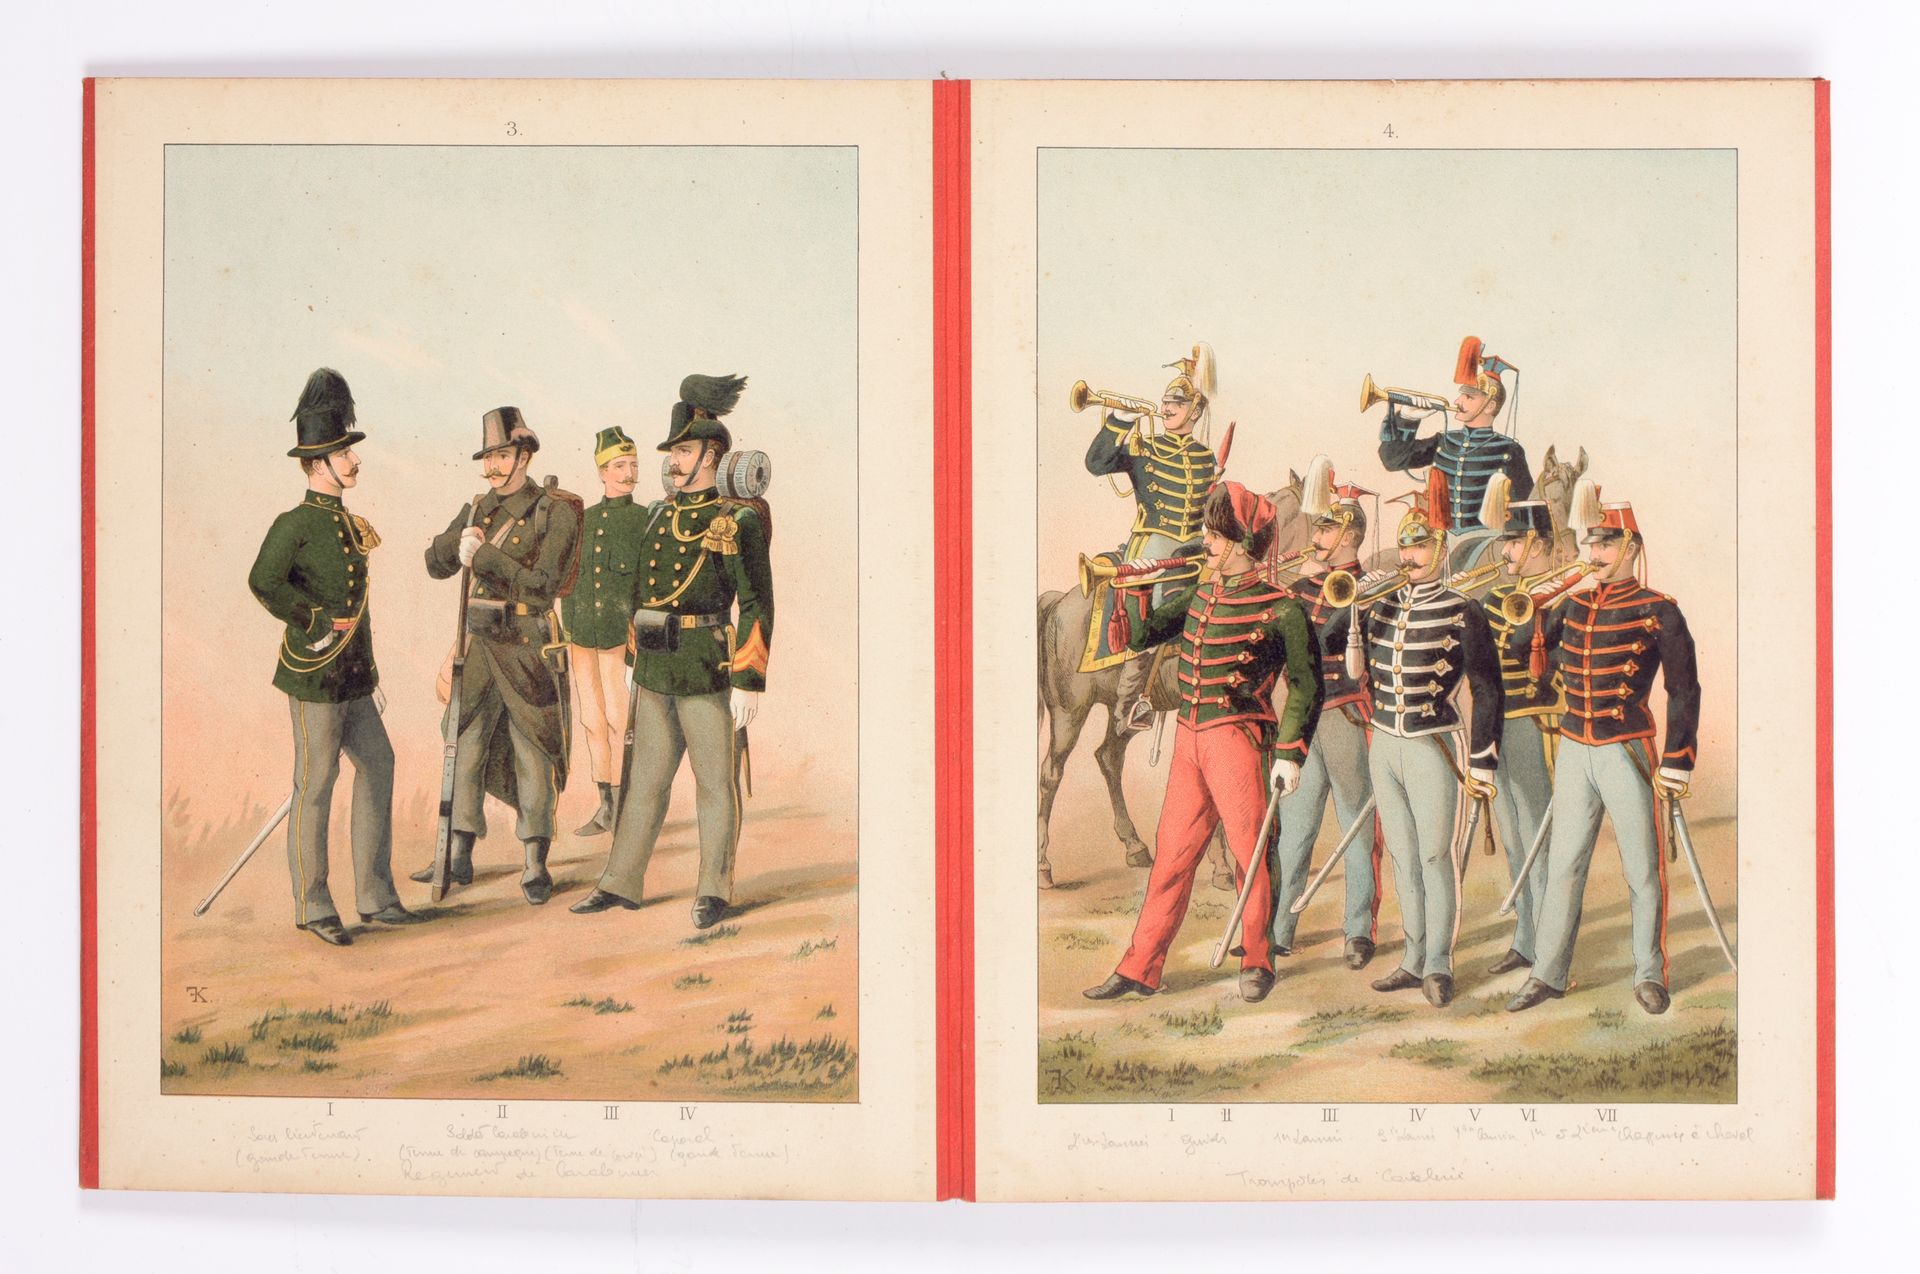 [MILITAIRE UNIFORMEN] Uniforms of the Belgian Army - Uniformen des Belgischen He&hellip;